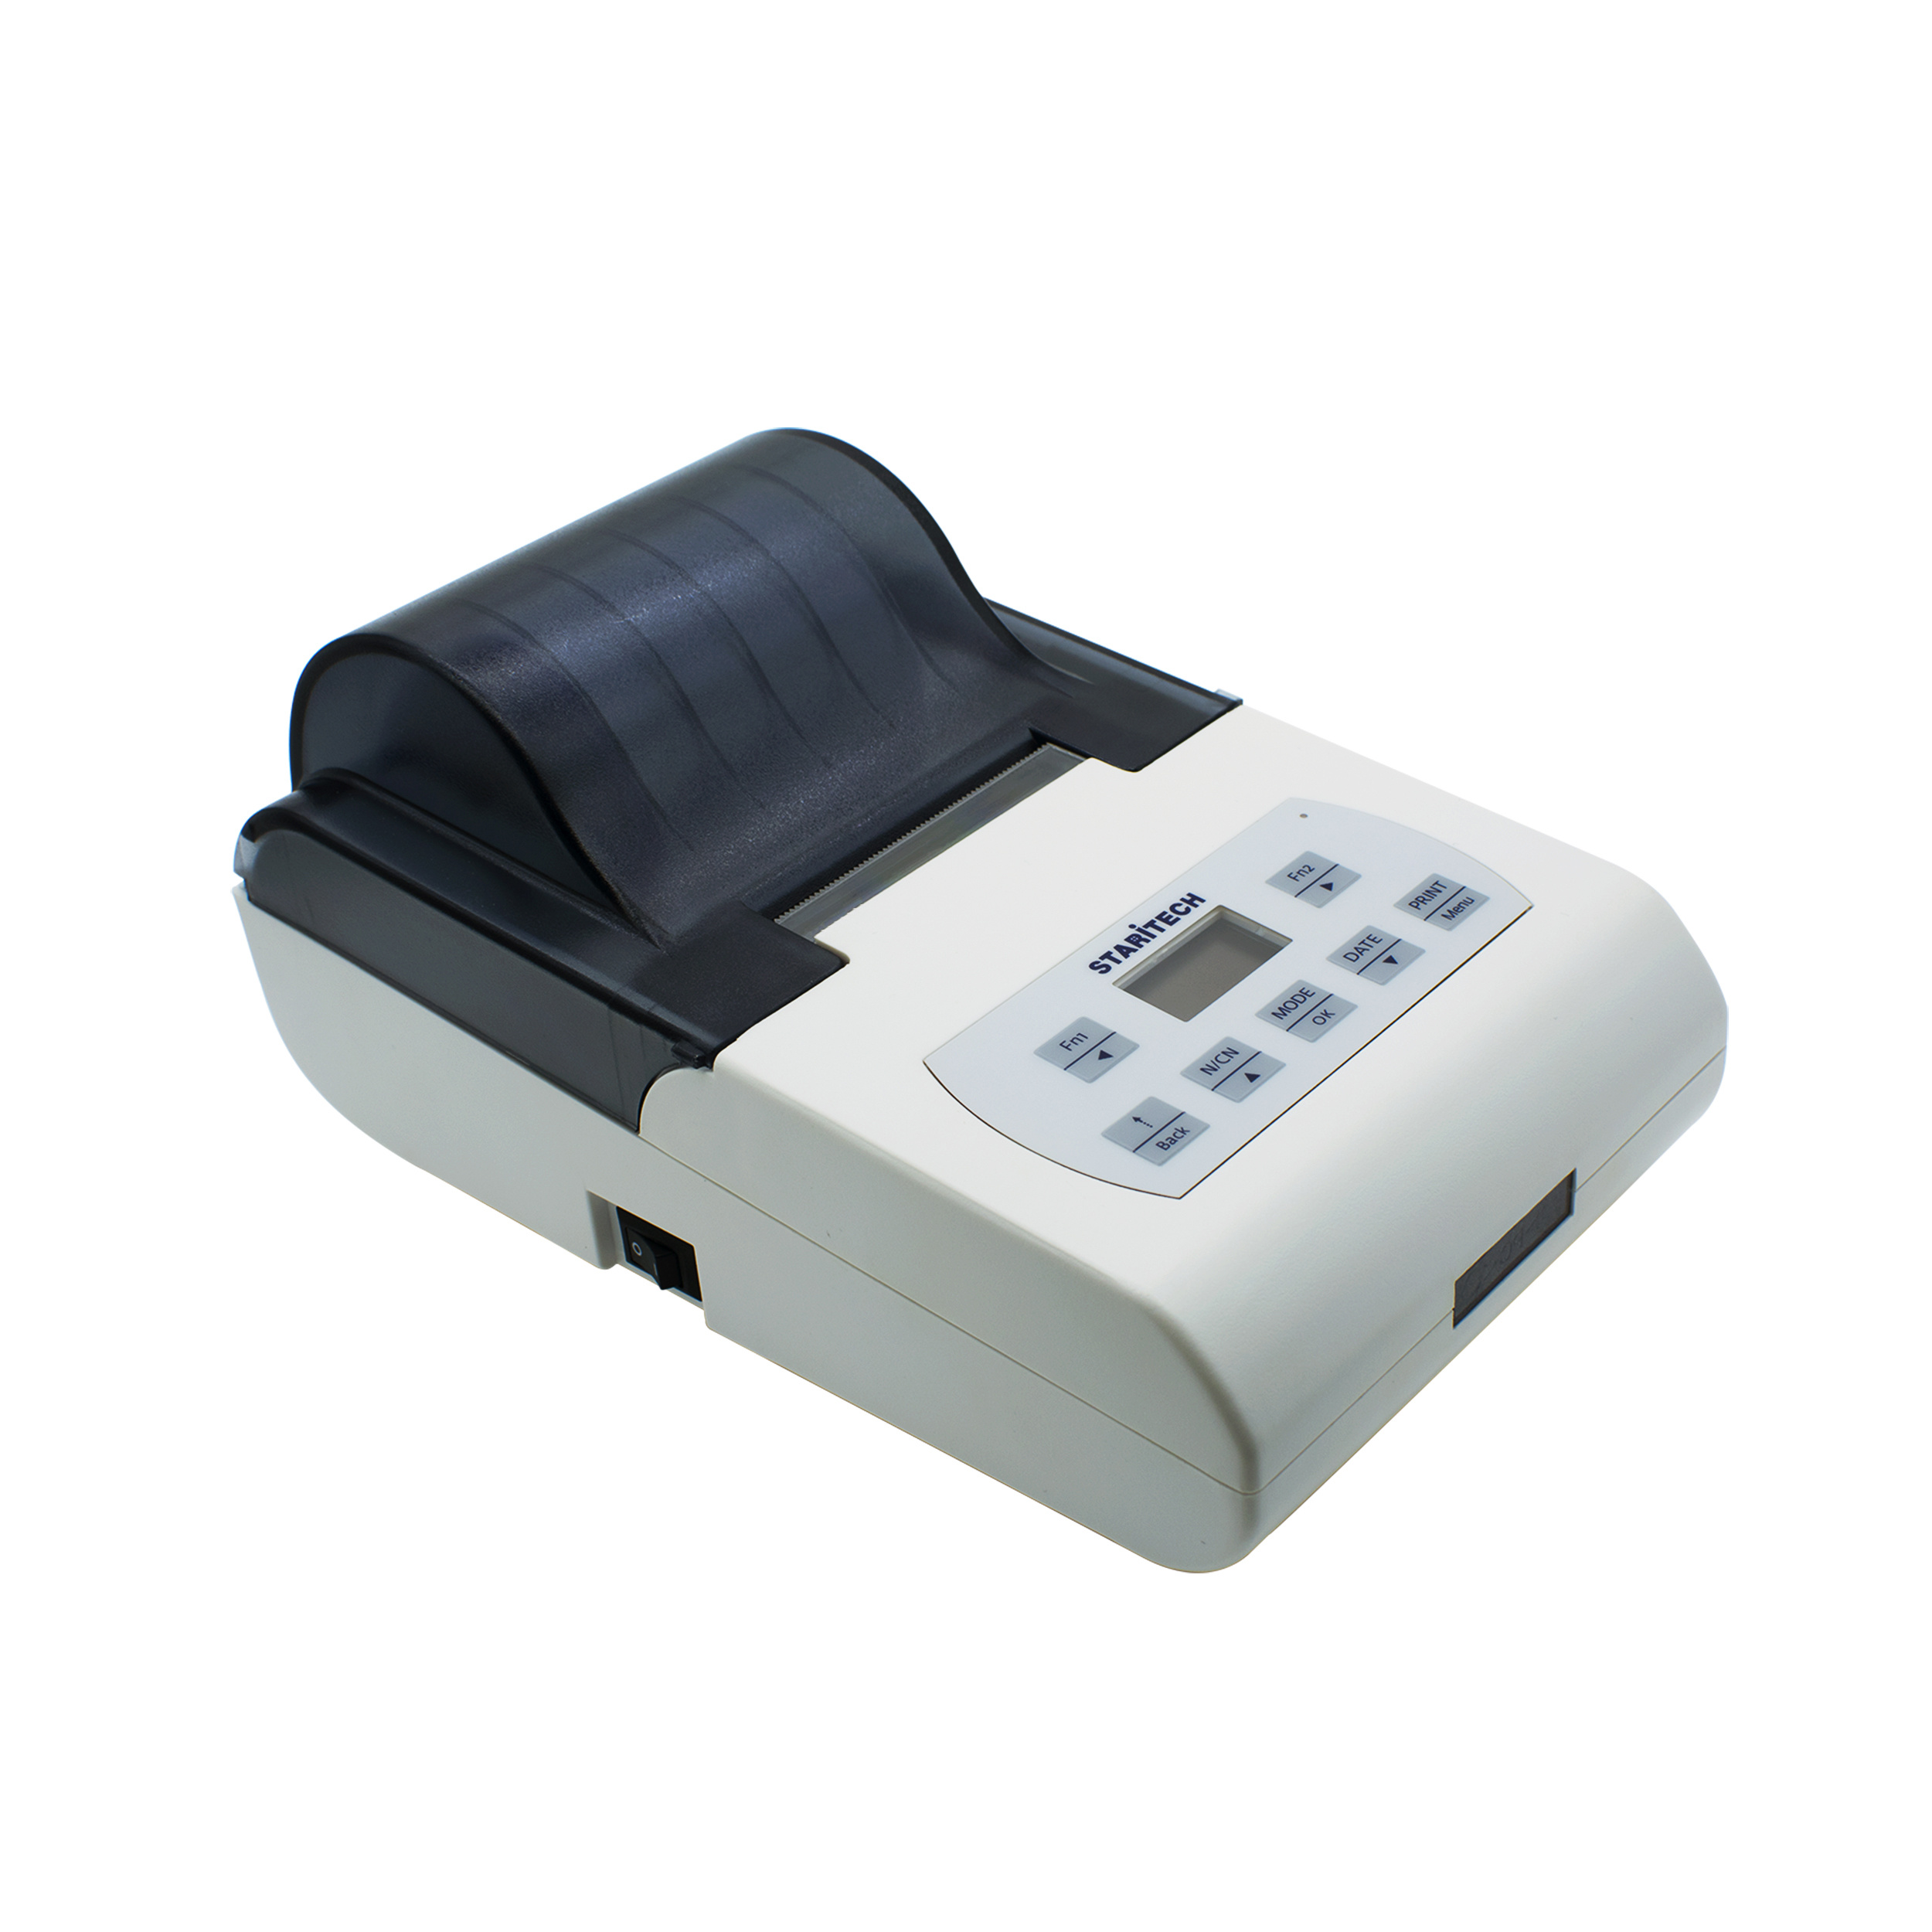 国产天平 TX-110CN天平打印机 适配国产全品牌天平